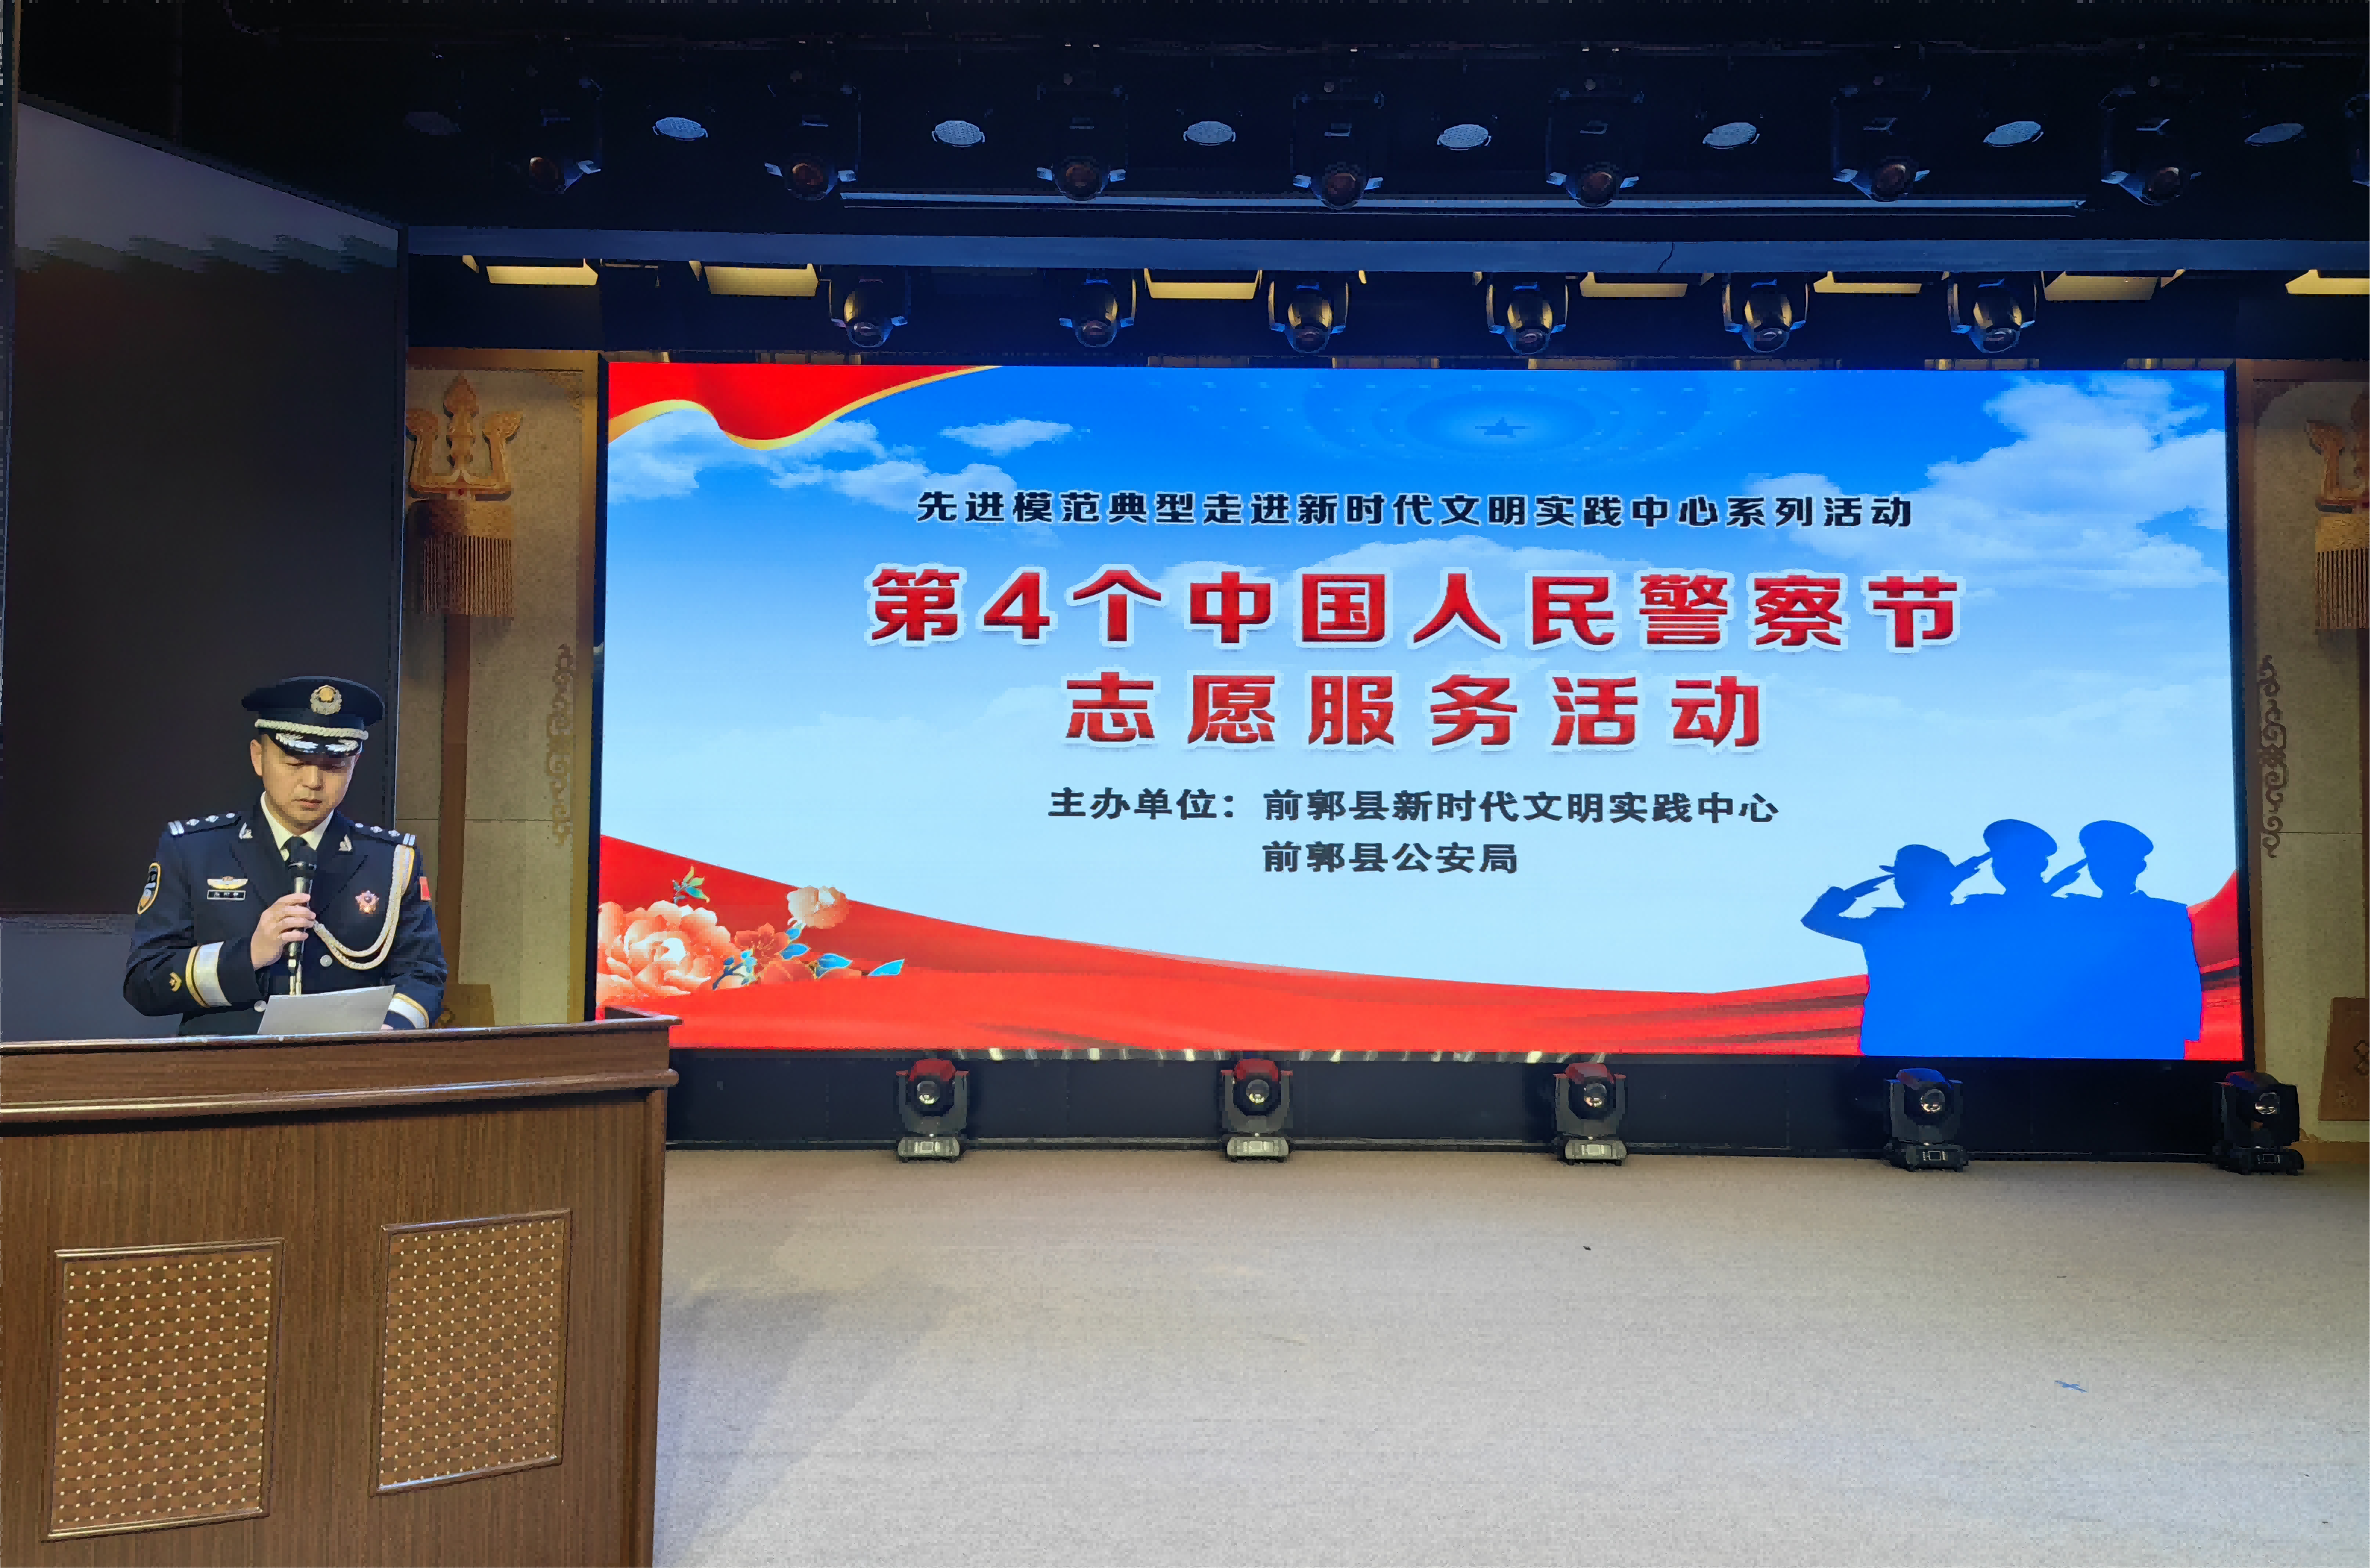 前郭县新时代文明实践中心组织开展第4个中国人民警察节志愿服务活动